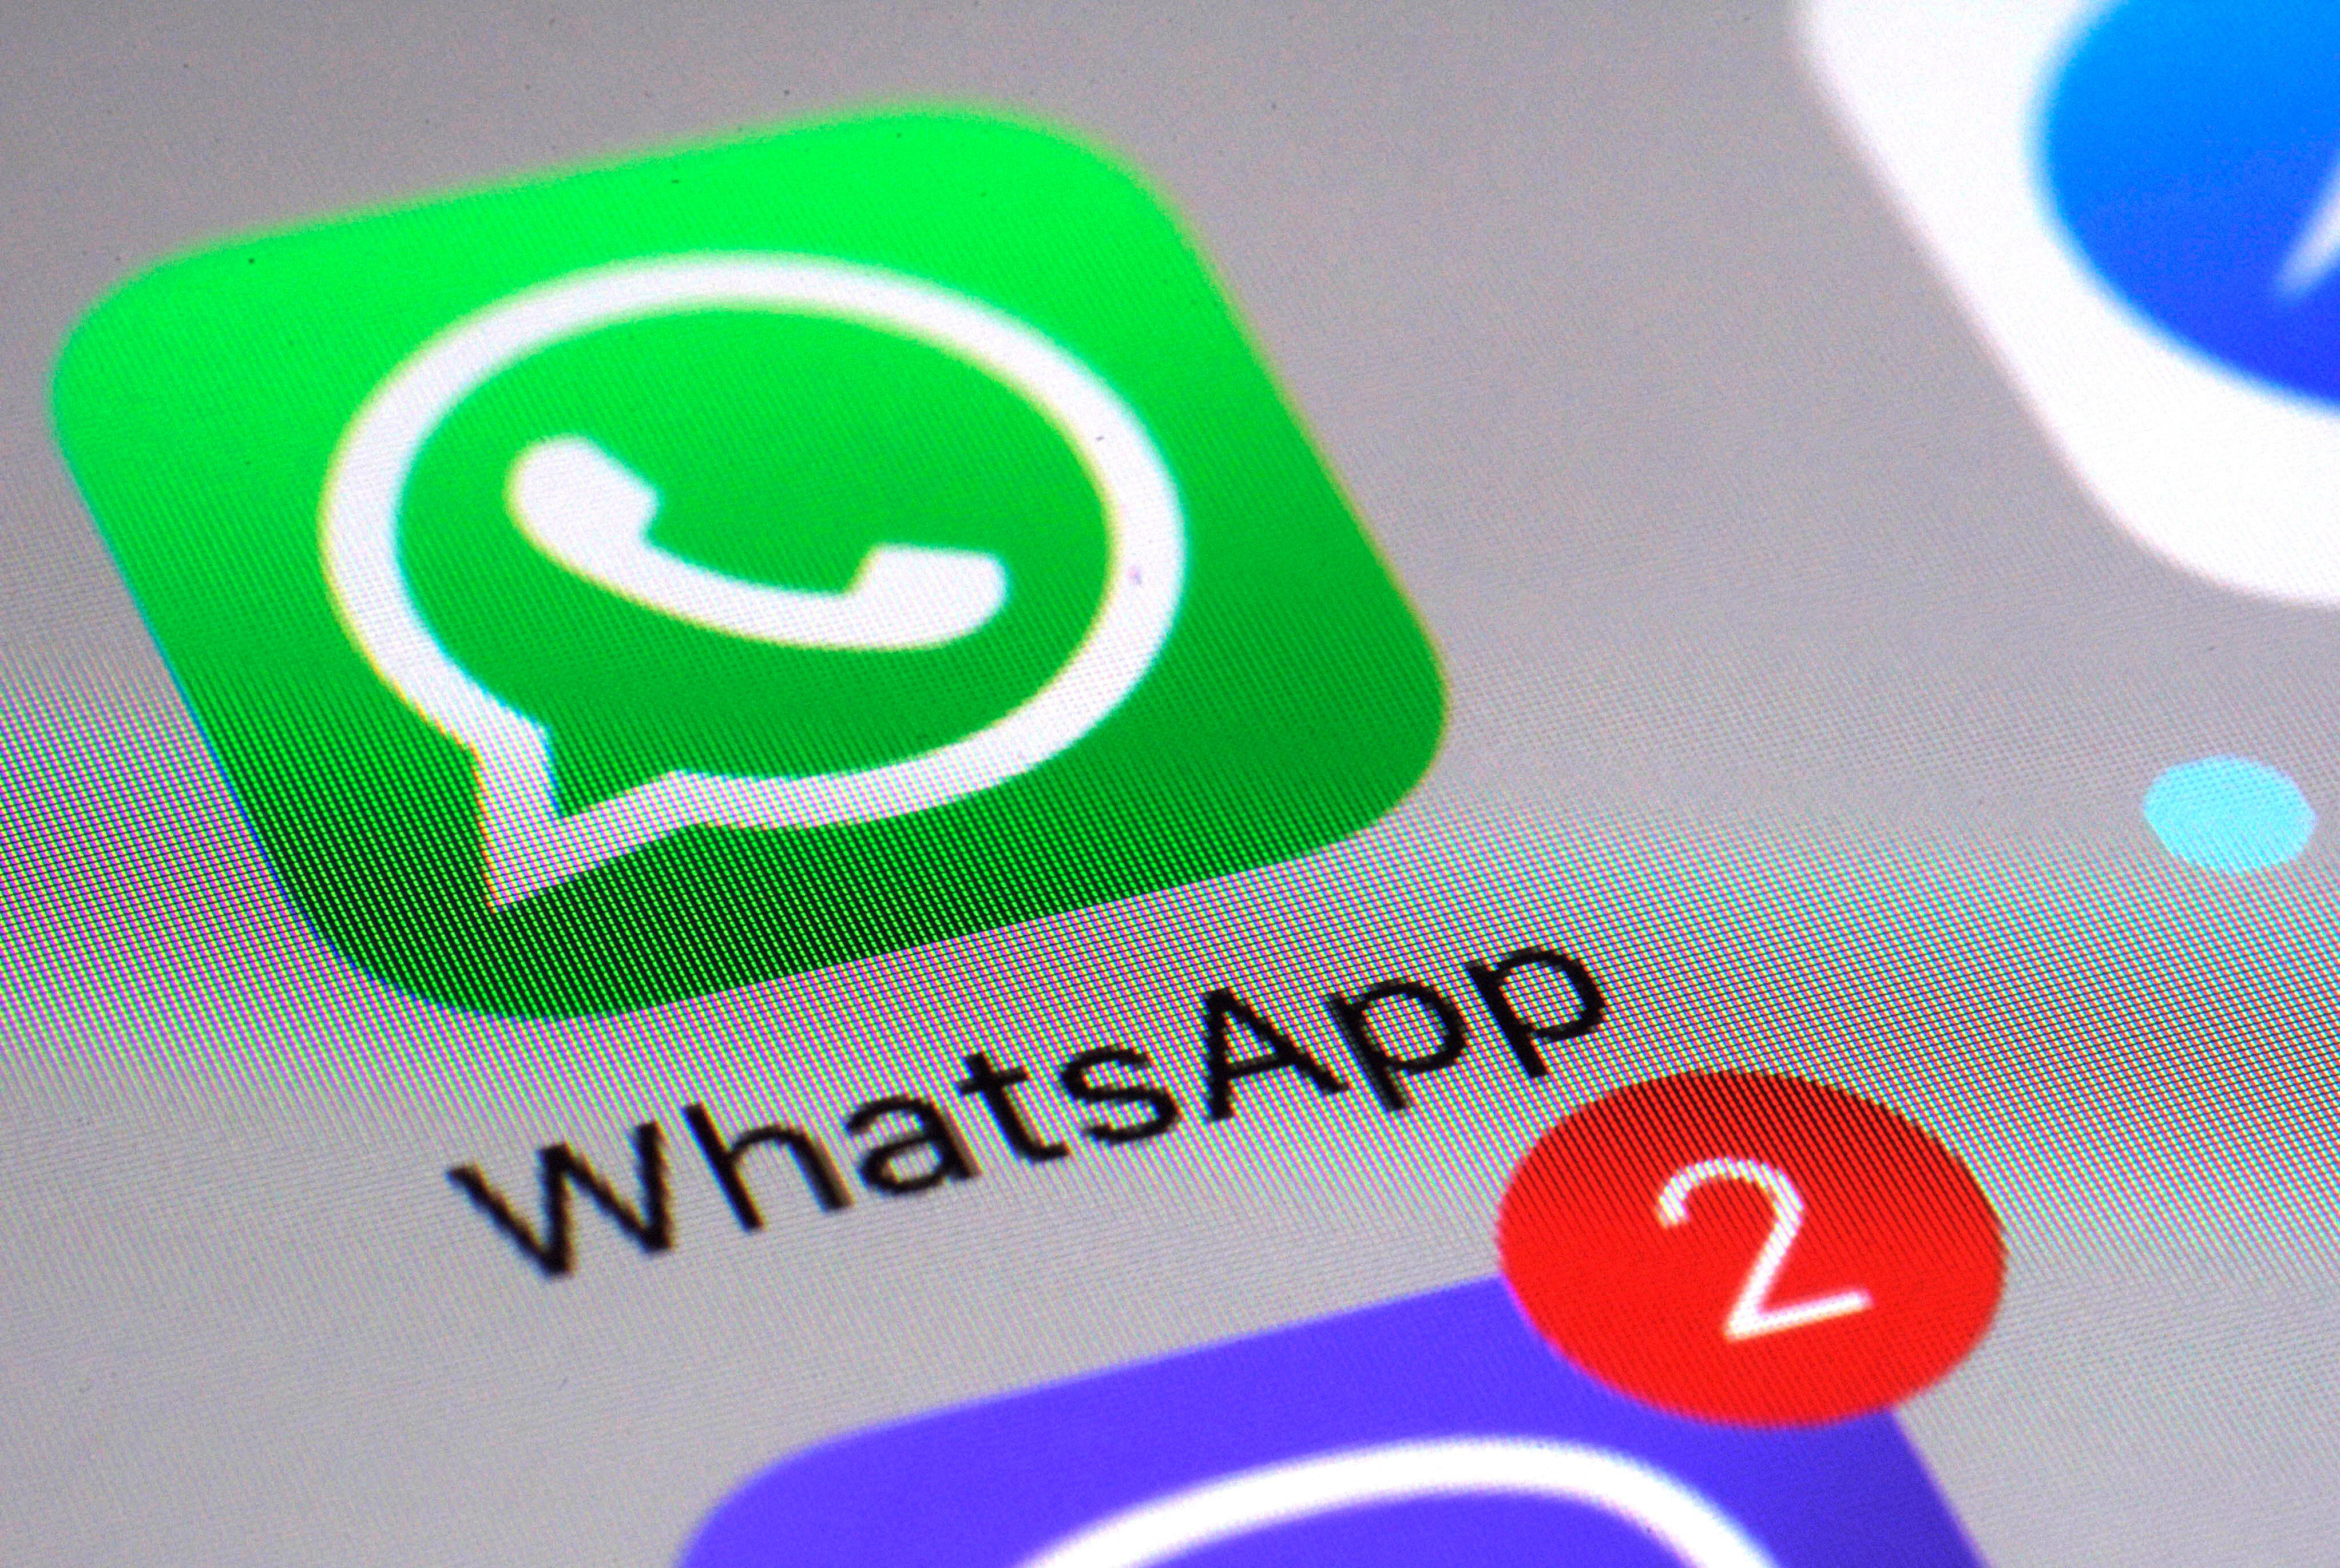 WhatsApp a annoncé plusieurs nouvelles fonctionnalités sur sa